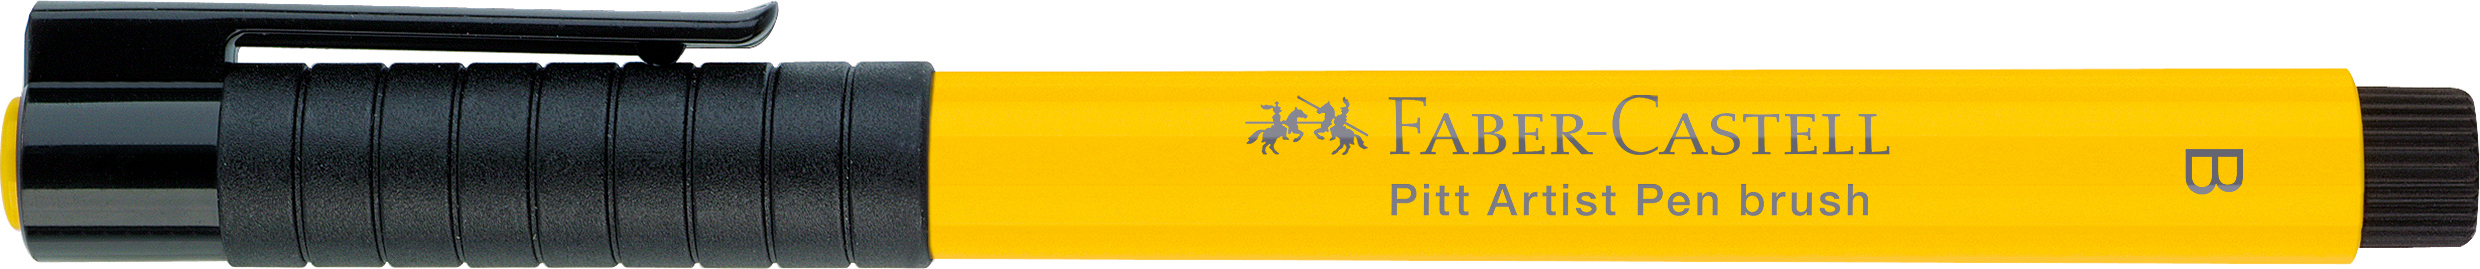 FABER-CASTELL Pitt Artist Pen Brush 2.5mm 167407 cadmium yellow